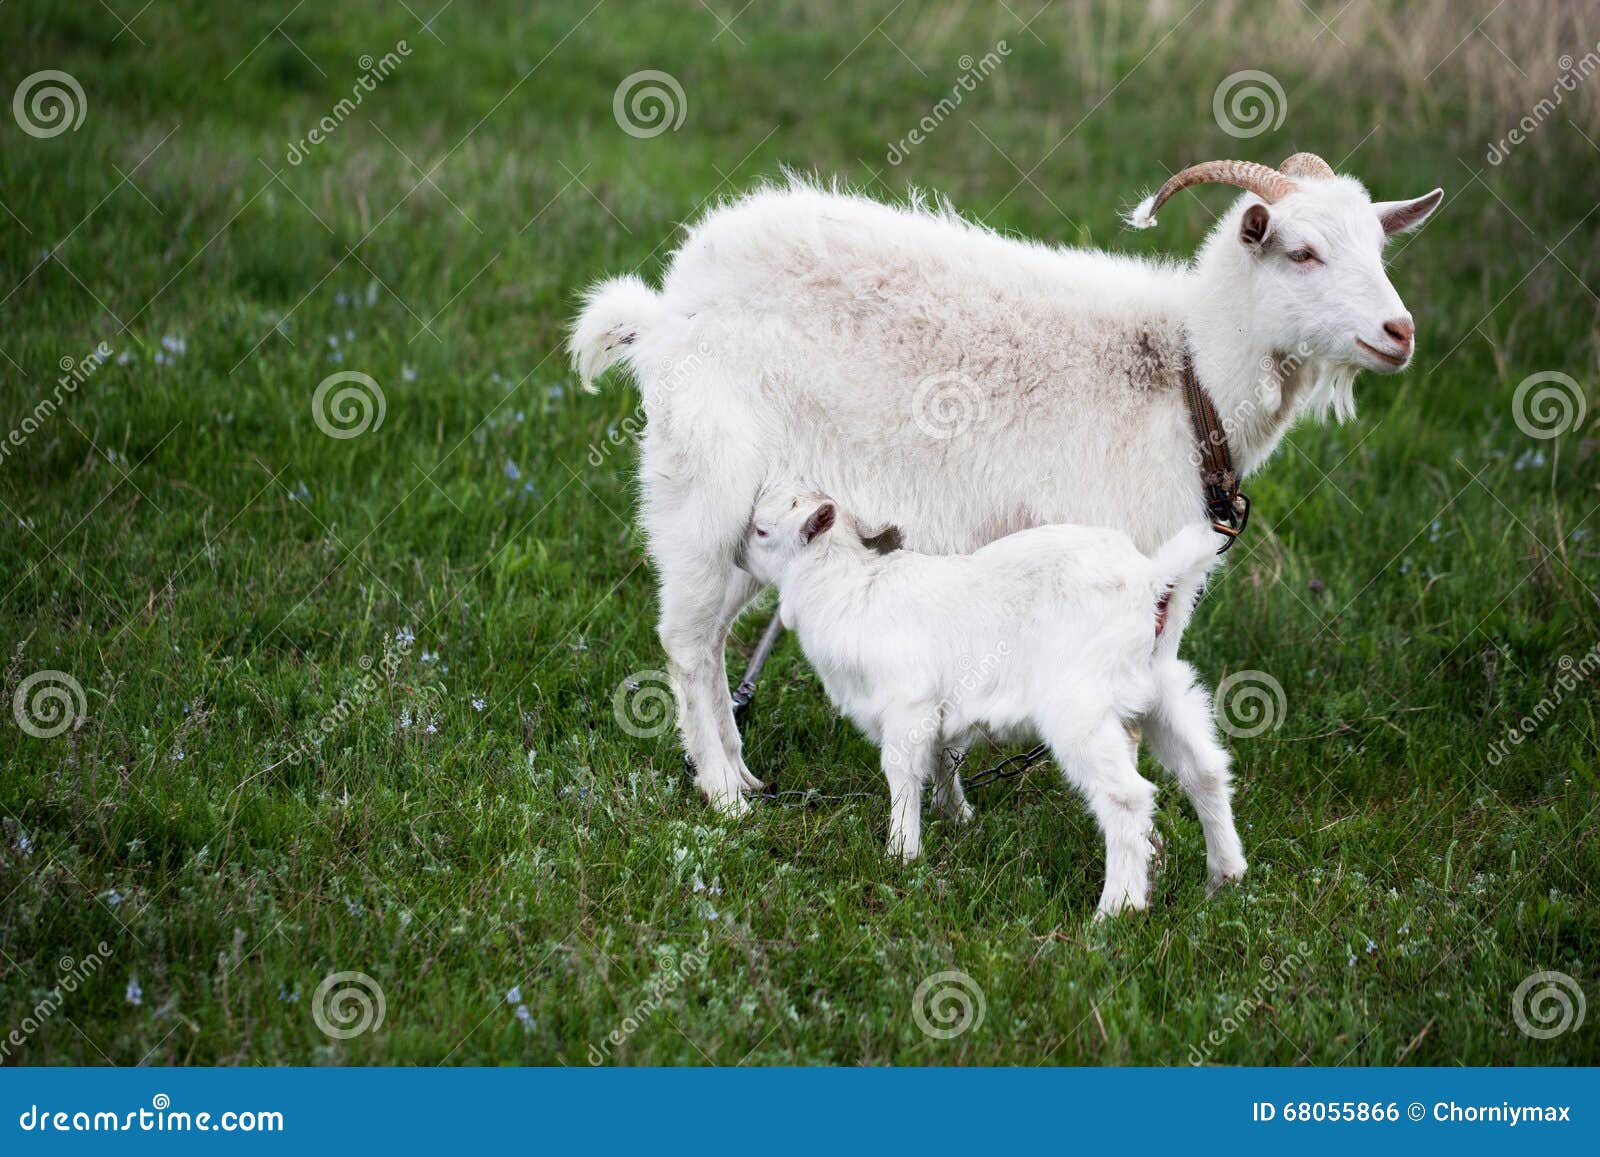 Козленок на английском. Коза с козлятами. Молодая коза. Козленок фото. Картинка коза с козлятами.